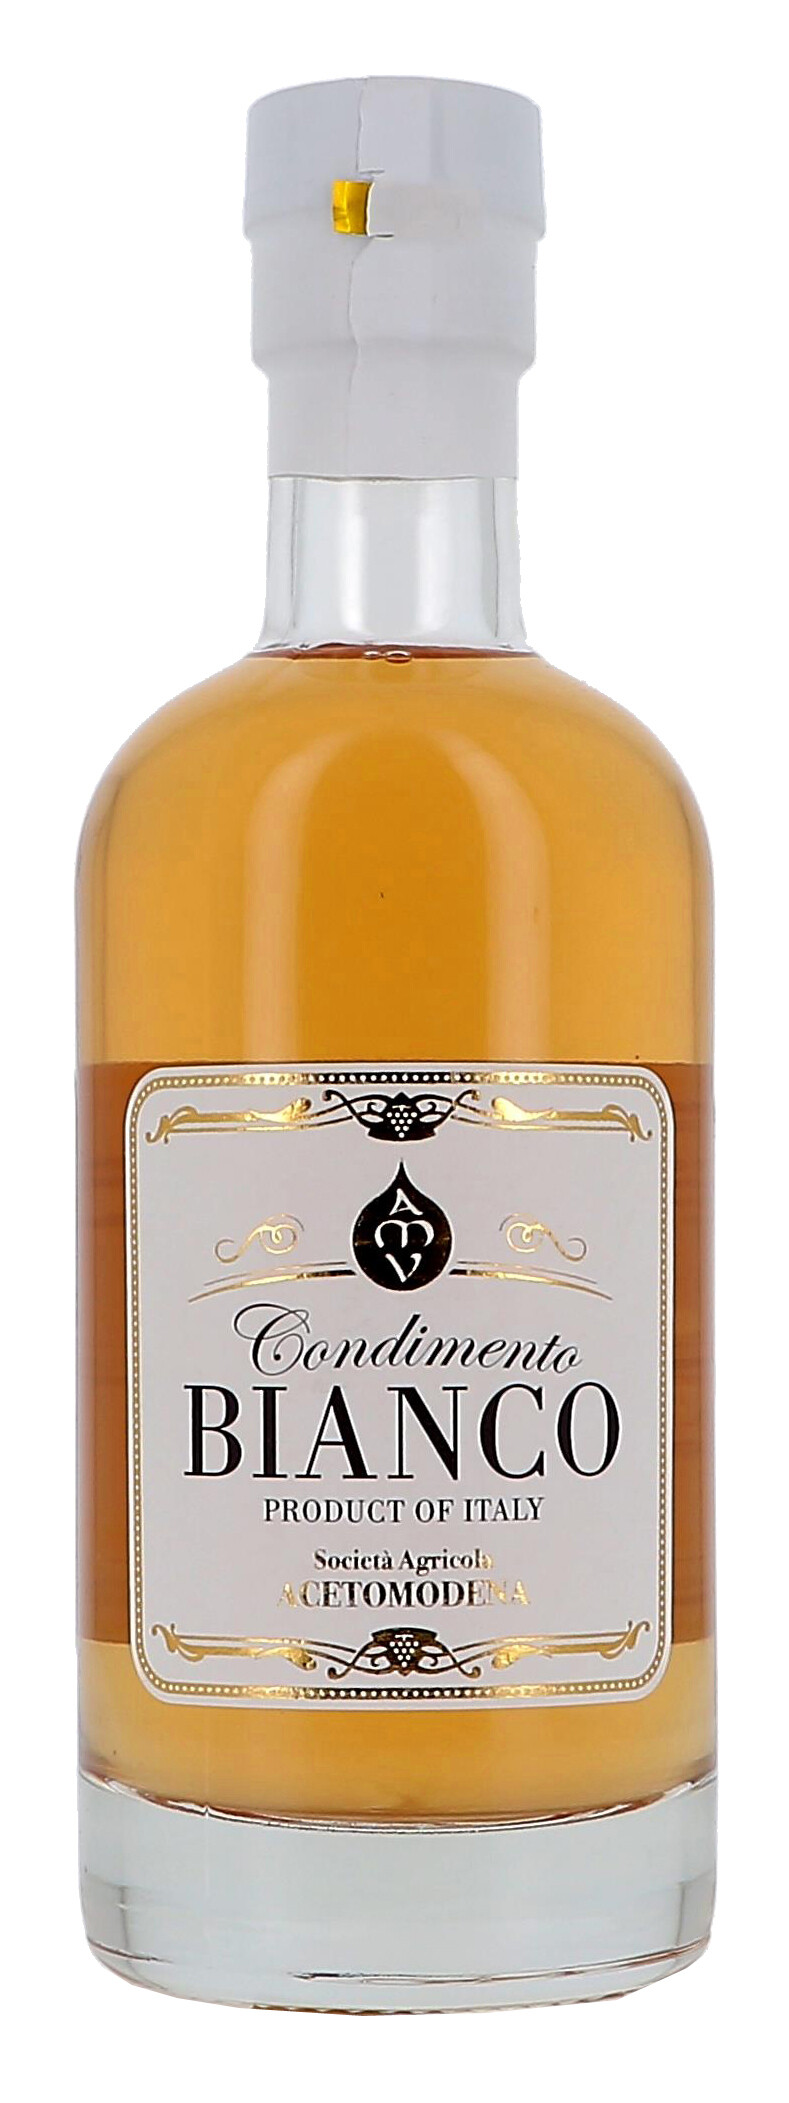 Balsamic vinegar of Modena 50cl Ponti